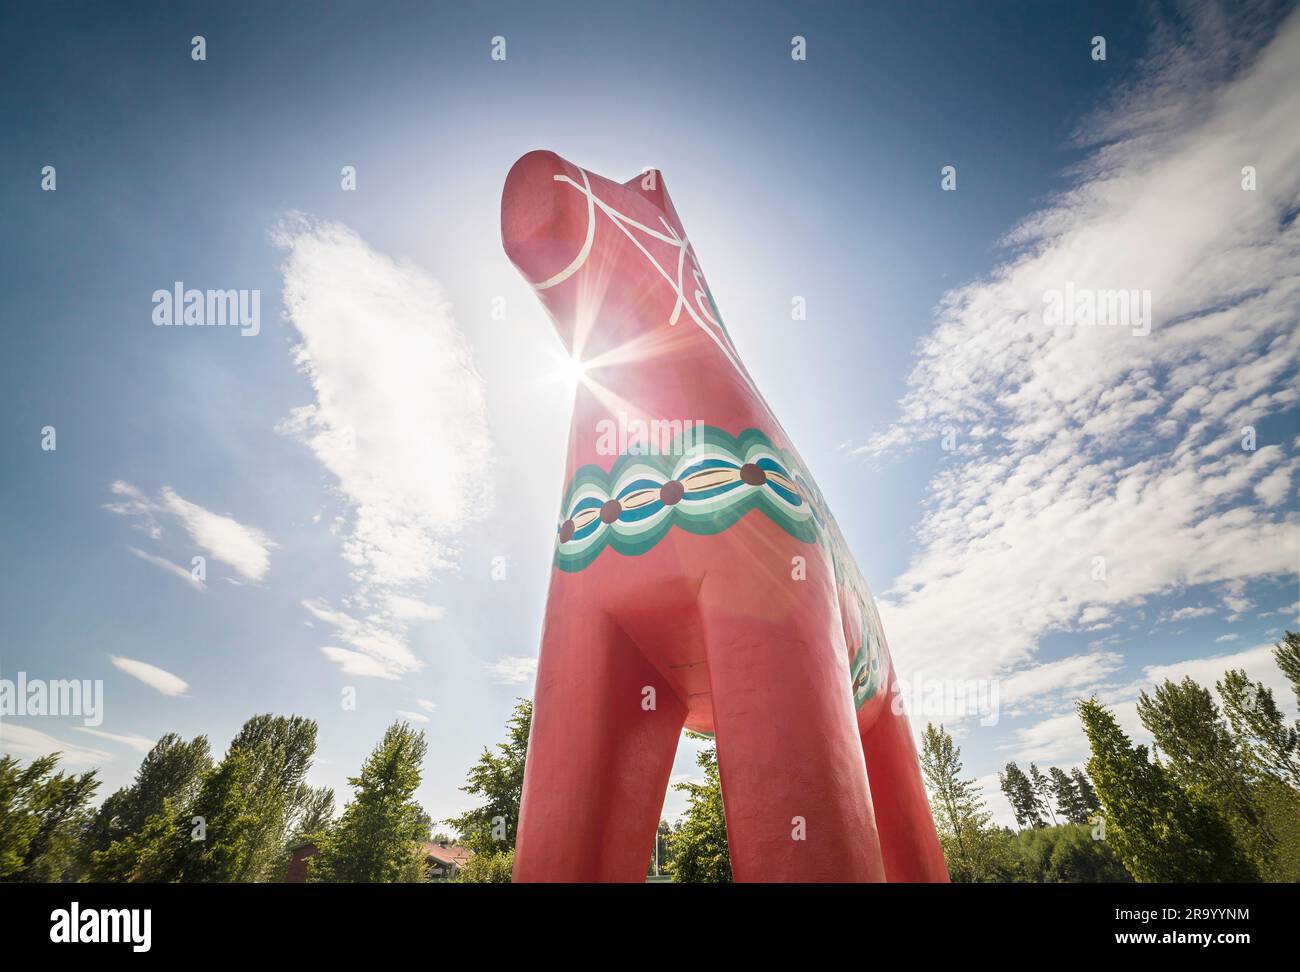 Vue à faible angle du gigantesque cheval Dala contre le soleil. Dalarna. Suède. Banque D'Images